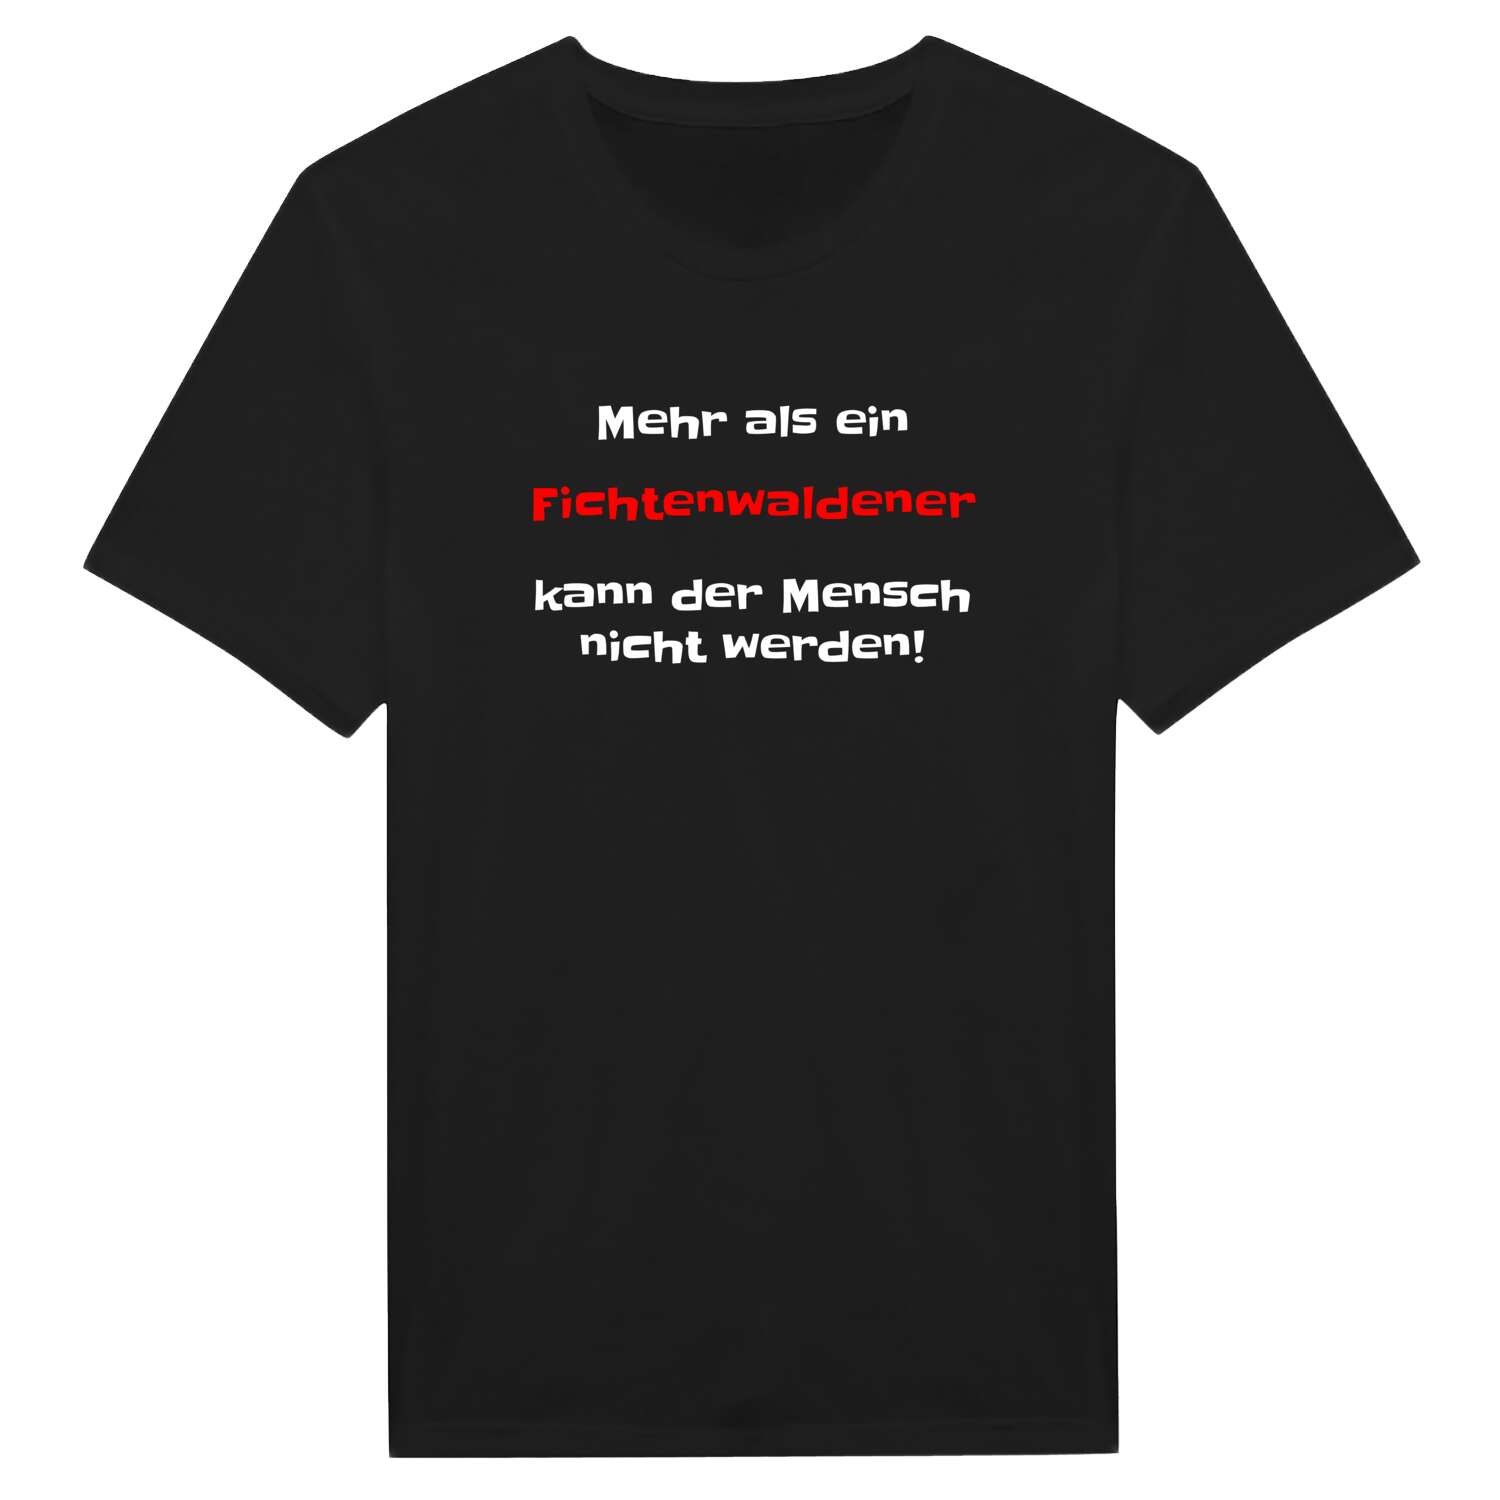 Fichtenwalde T-Shirt »Mehr als ein«